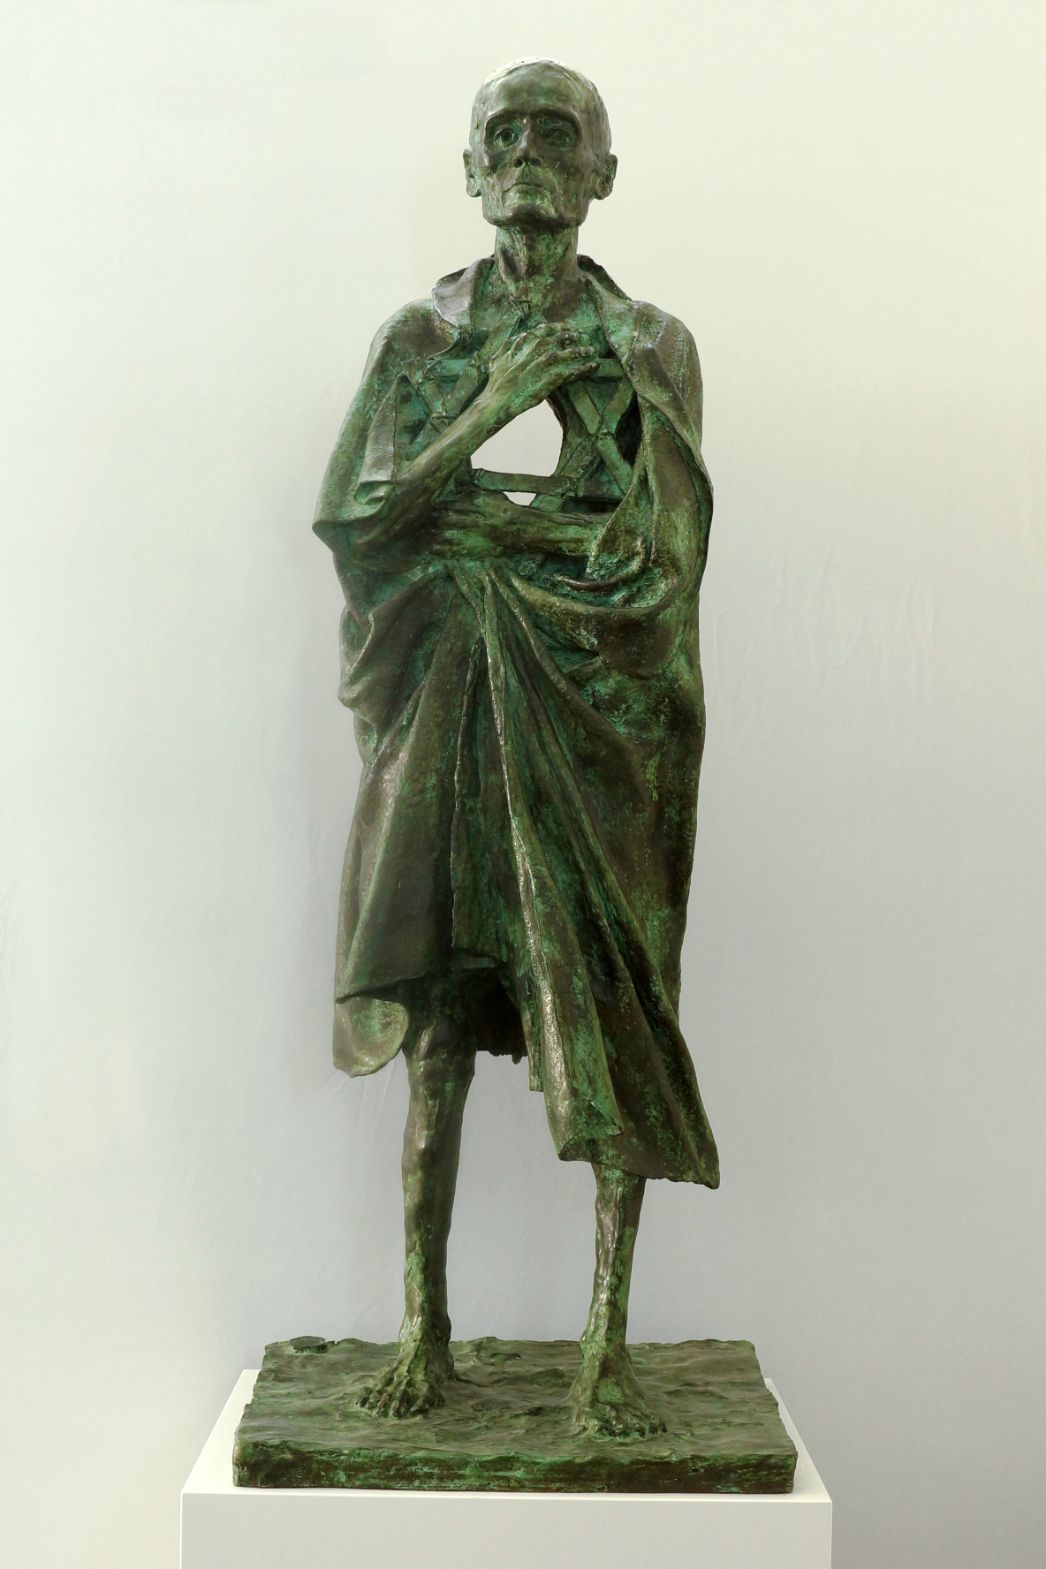 Eine Bronzeskultur eines abgemagerten Häftlings, der sich eine zerschlissene Decke umgehängt hat. Seine Brust ist hohl.